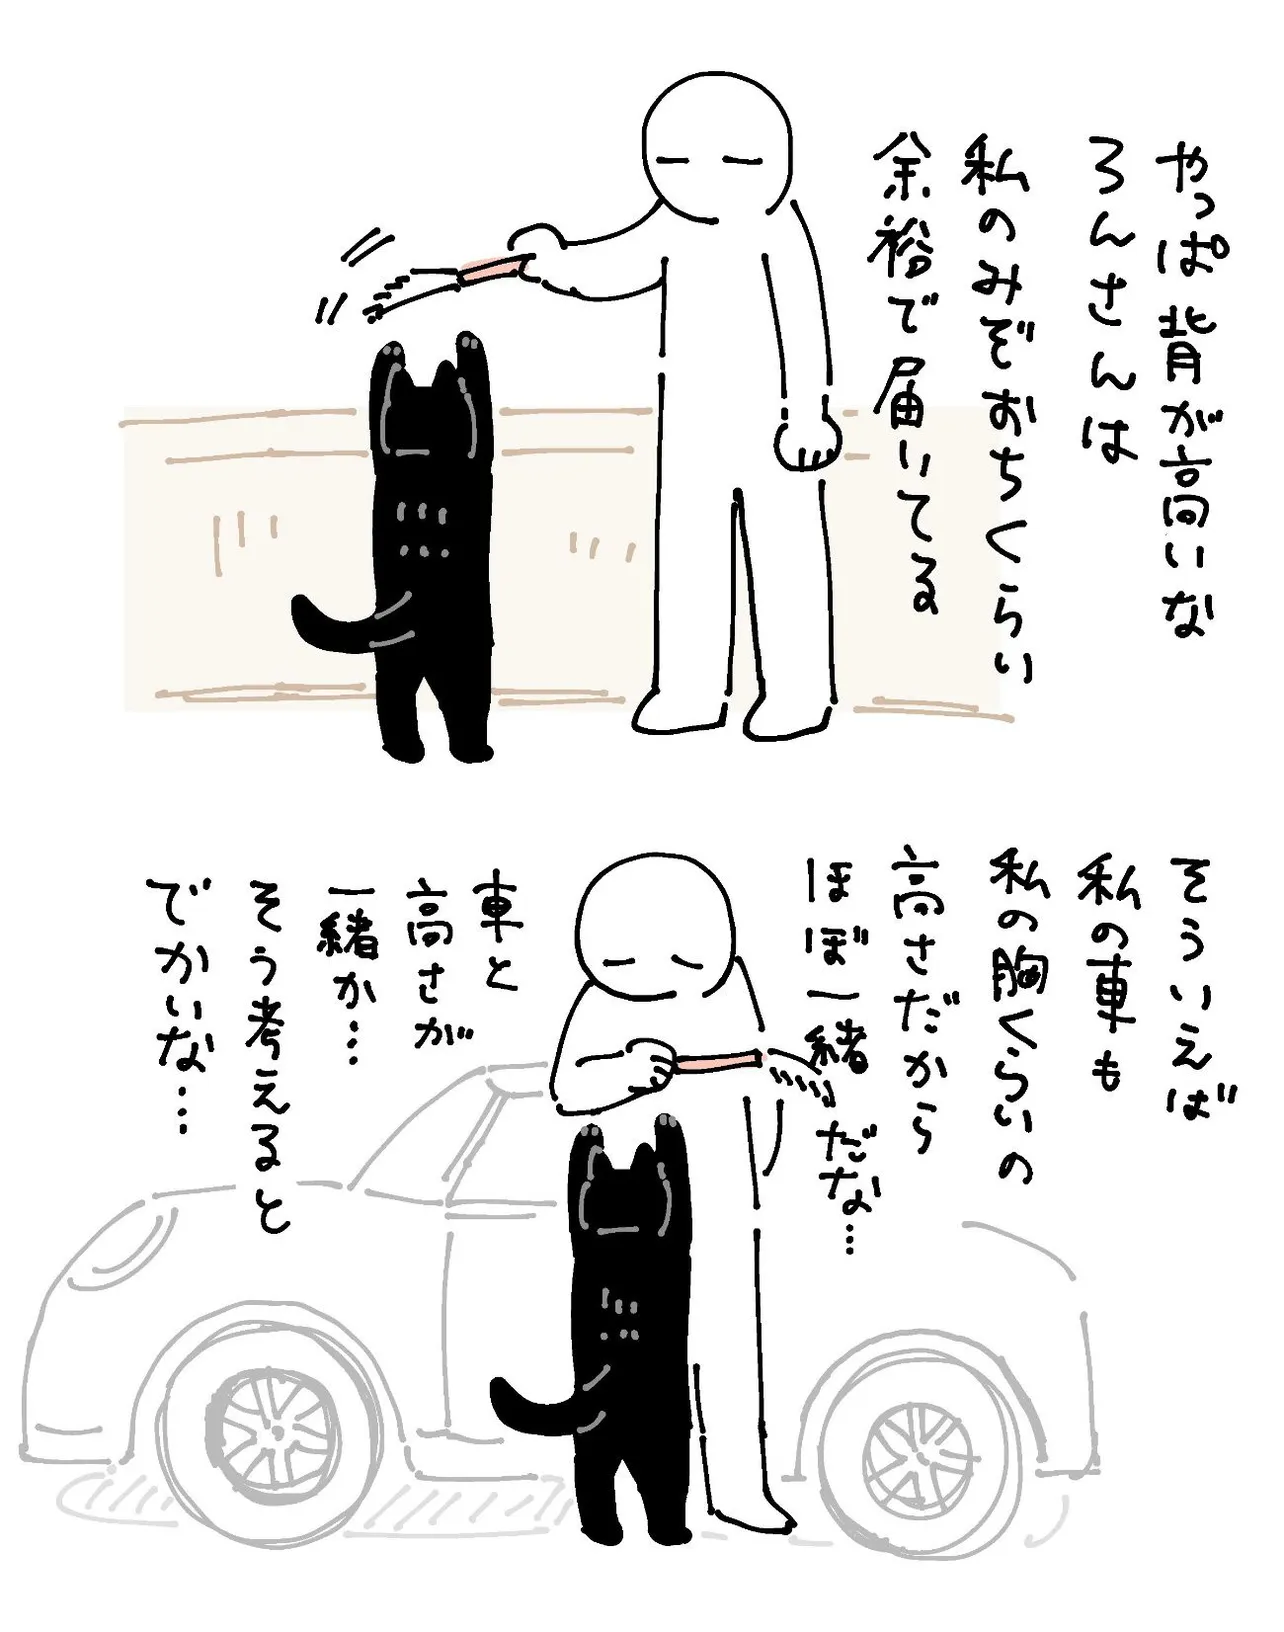 『愛猫と愛車の背の高さ、ほぼ一緒』